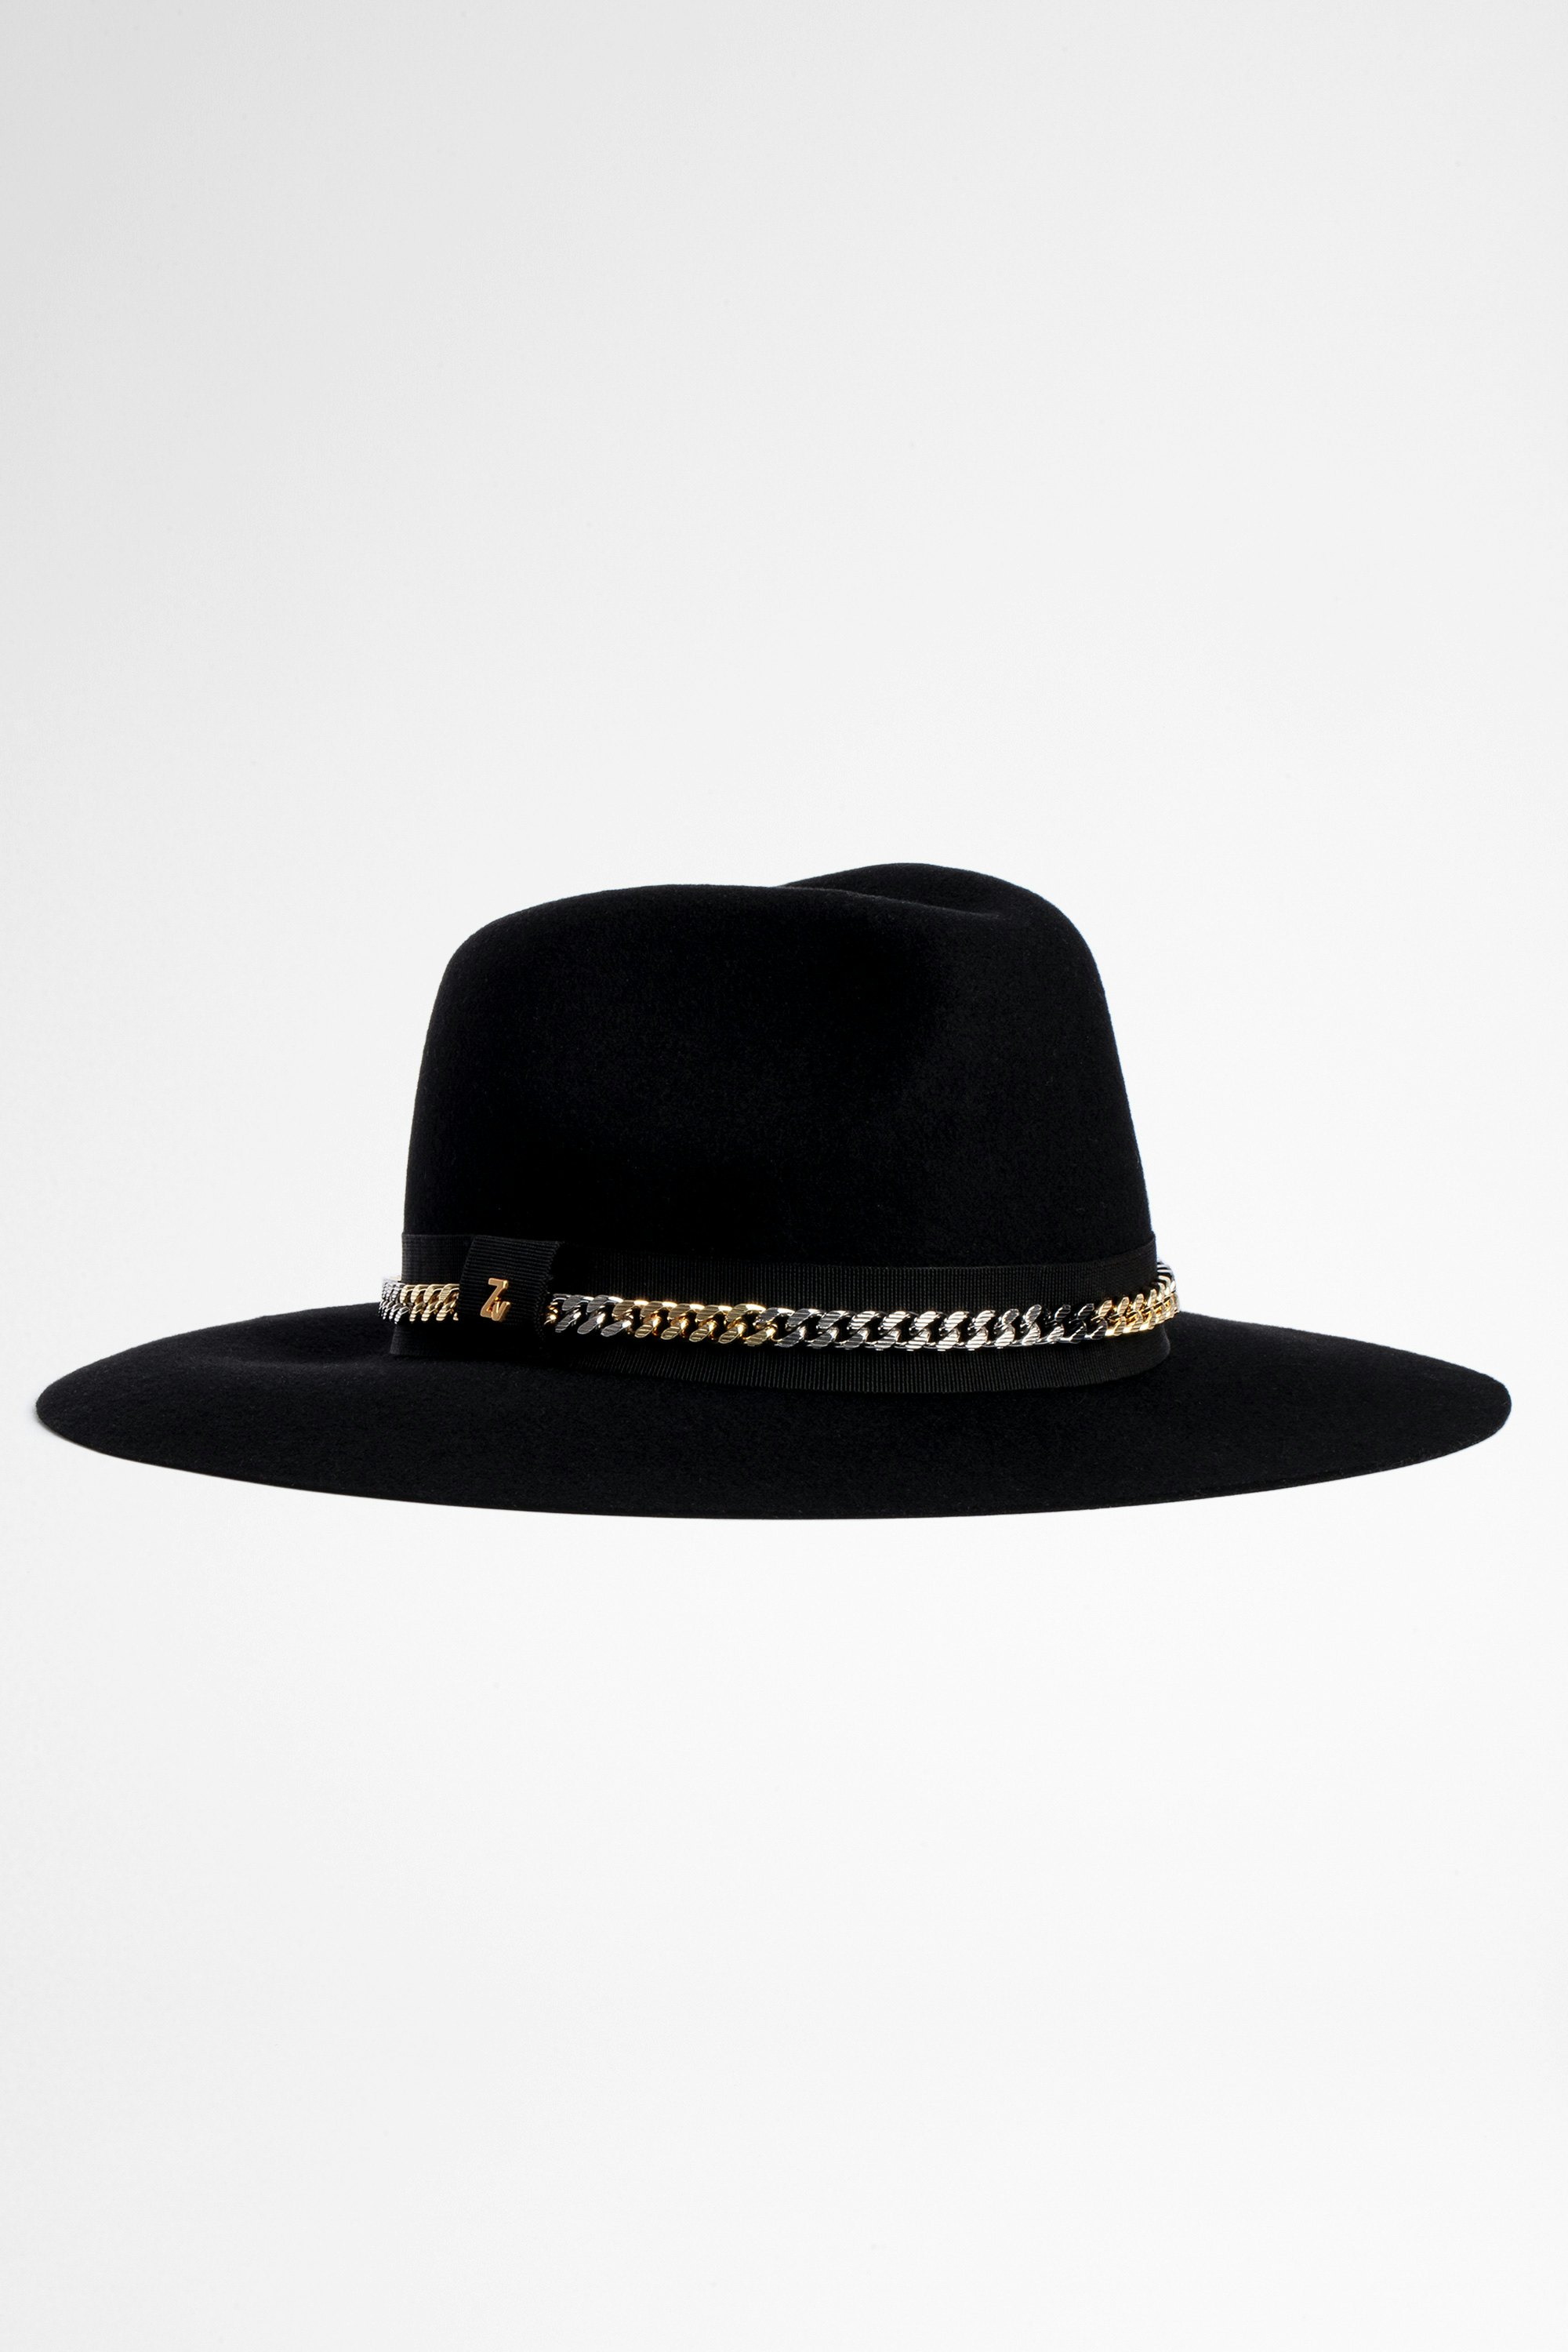 Sombrero Amelia chain Sombrero negro de mujer de lana con cadena dorada